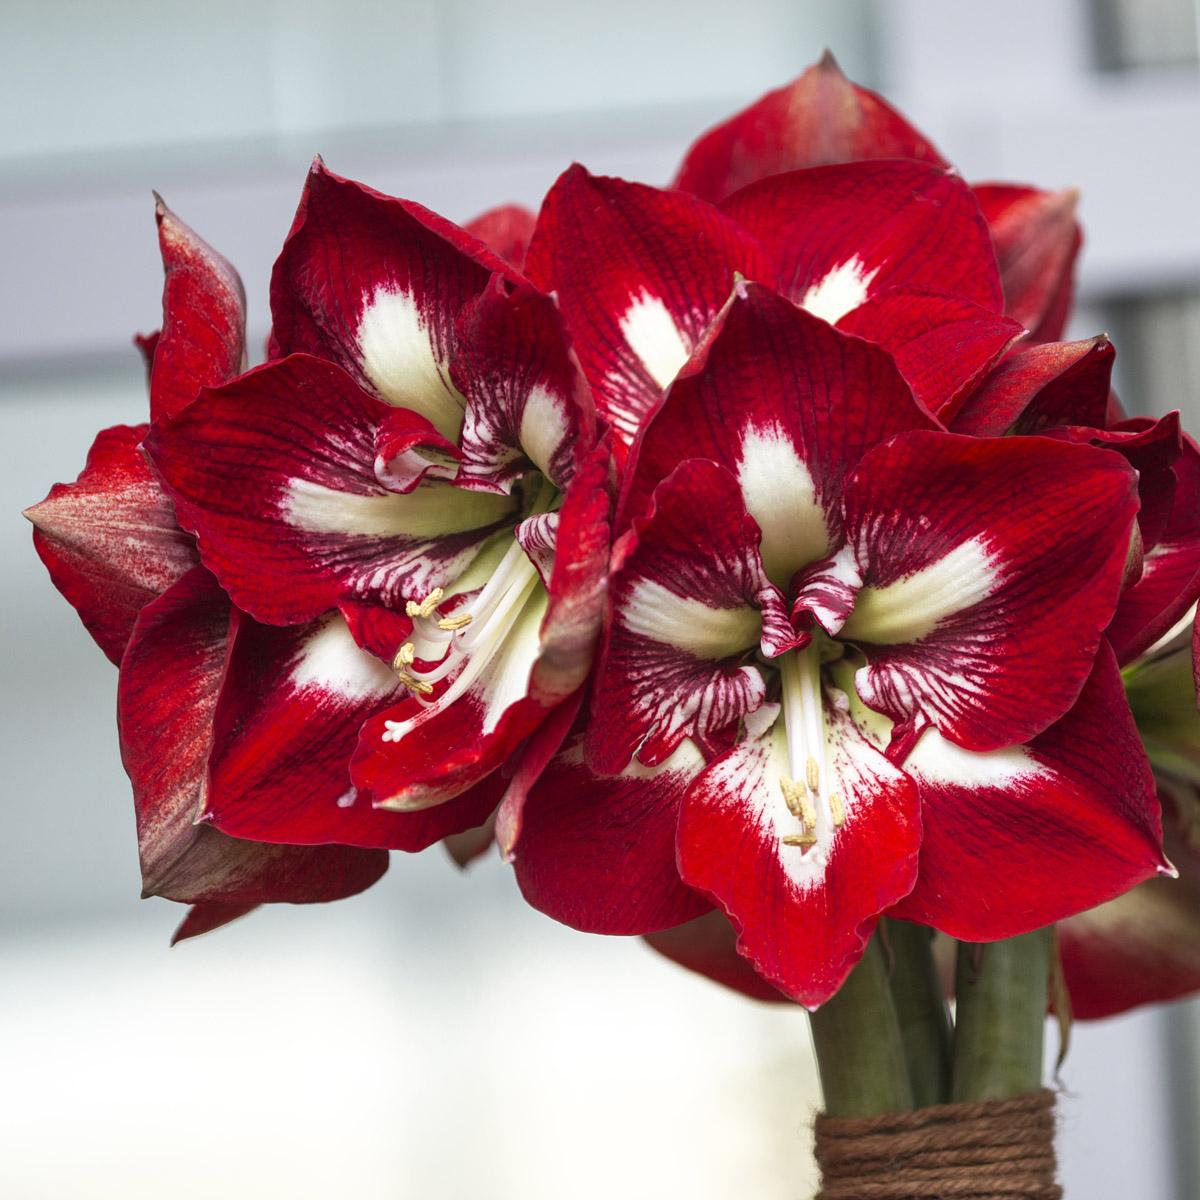 Afbeelding met plant, bloem, bloemblaadje, rood
Automatisch gegenereerde beschrijving